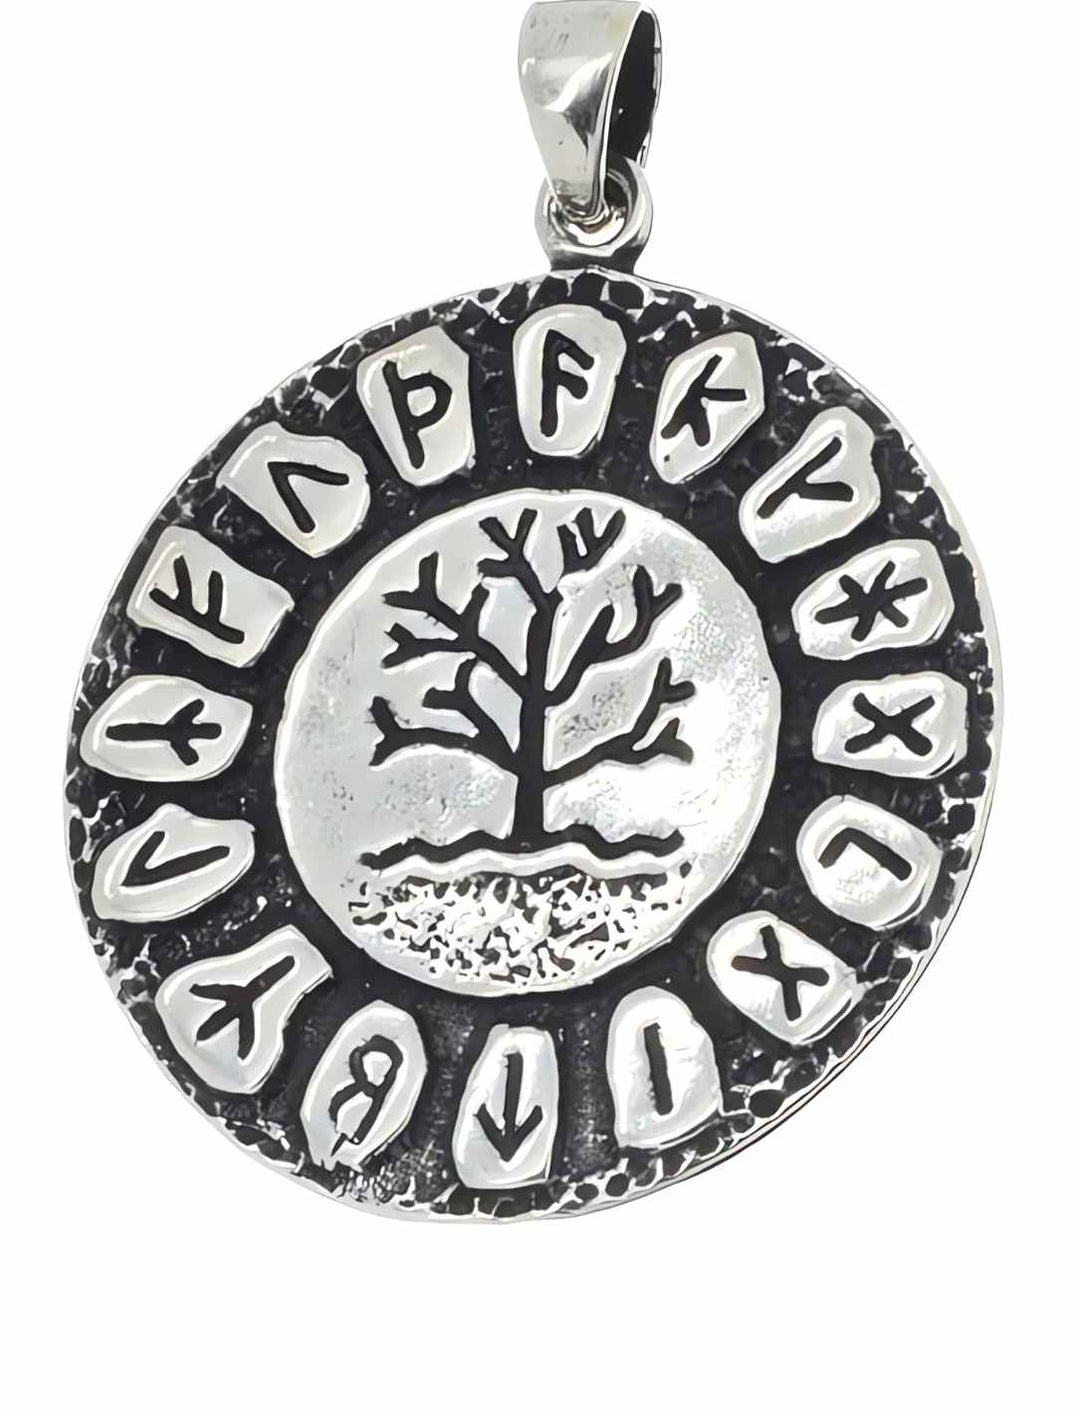 Runenaura Yggdrasils Anhänger auf weißem Hintergrund – Ein fein gearbeiteter 925 Sterling Silber Anhänger, der das symbolträchtige Bild des Yggdrasil mit umgebenden Runen zeigt, ein Stück, das die Kraft nordischer Legenden einfängt